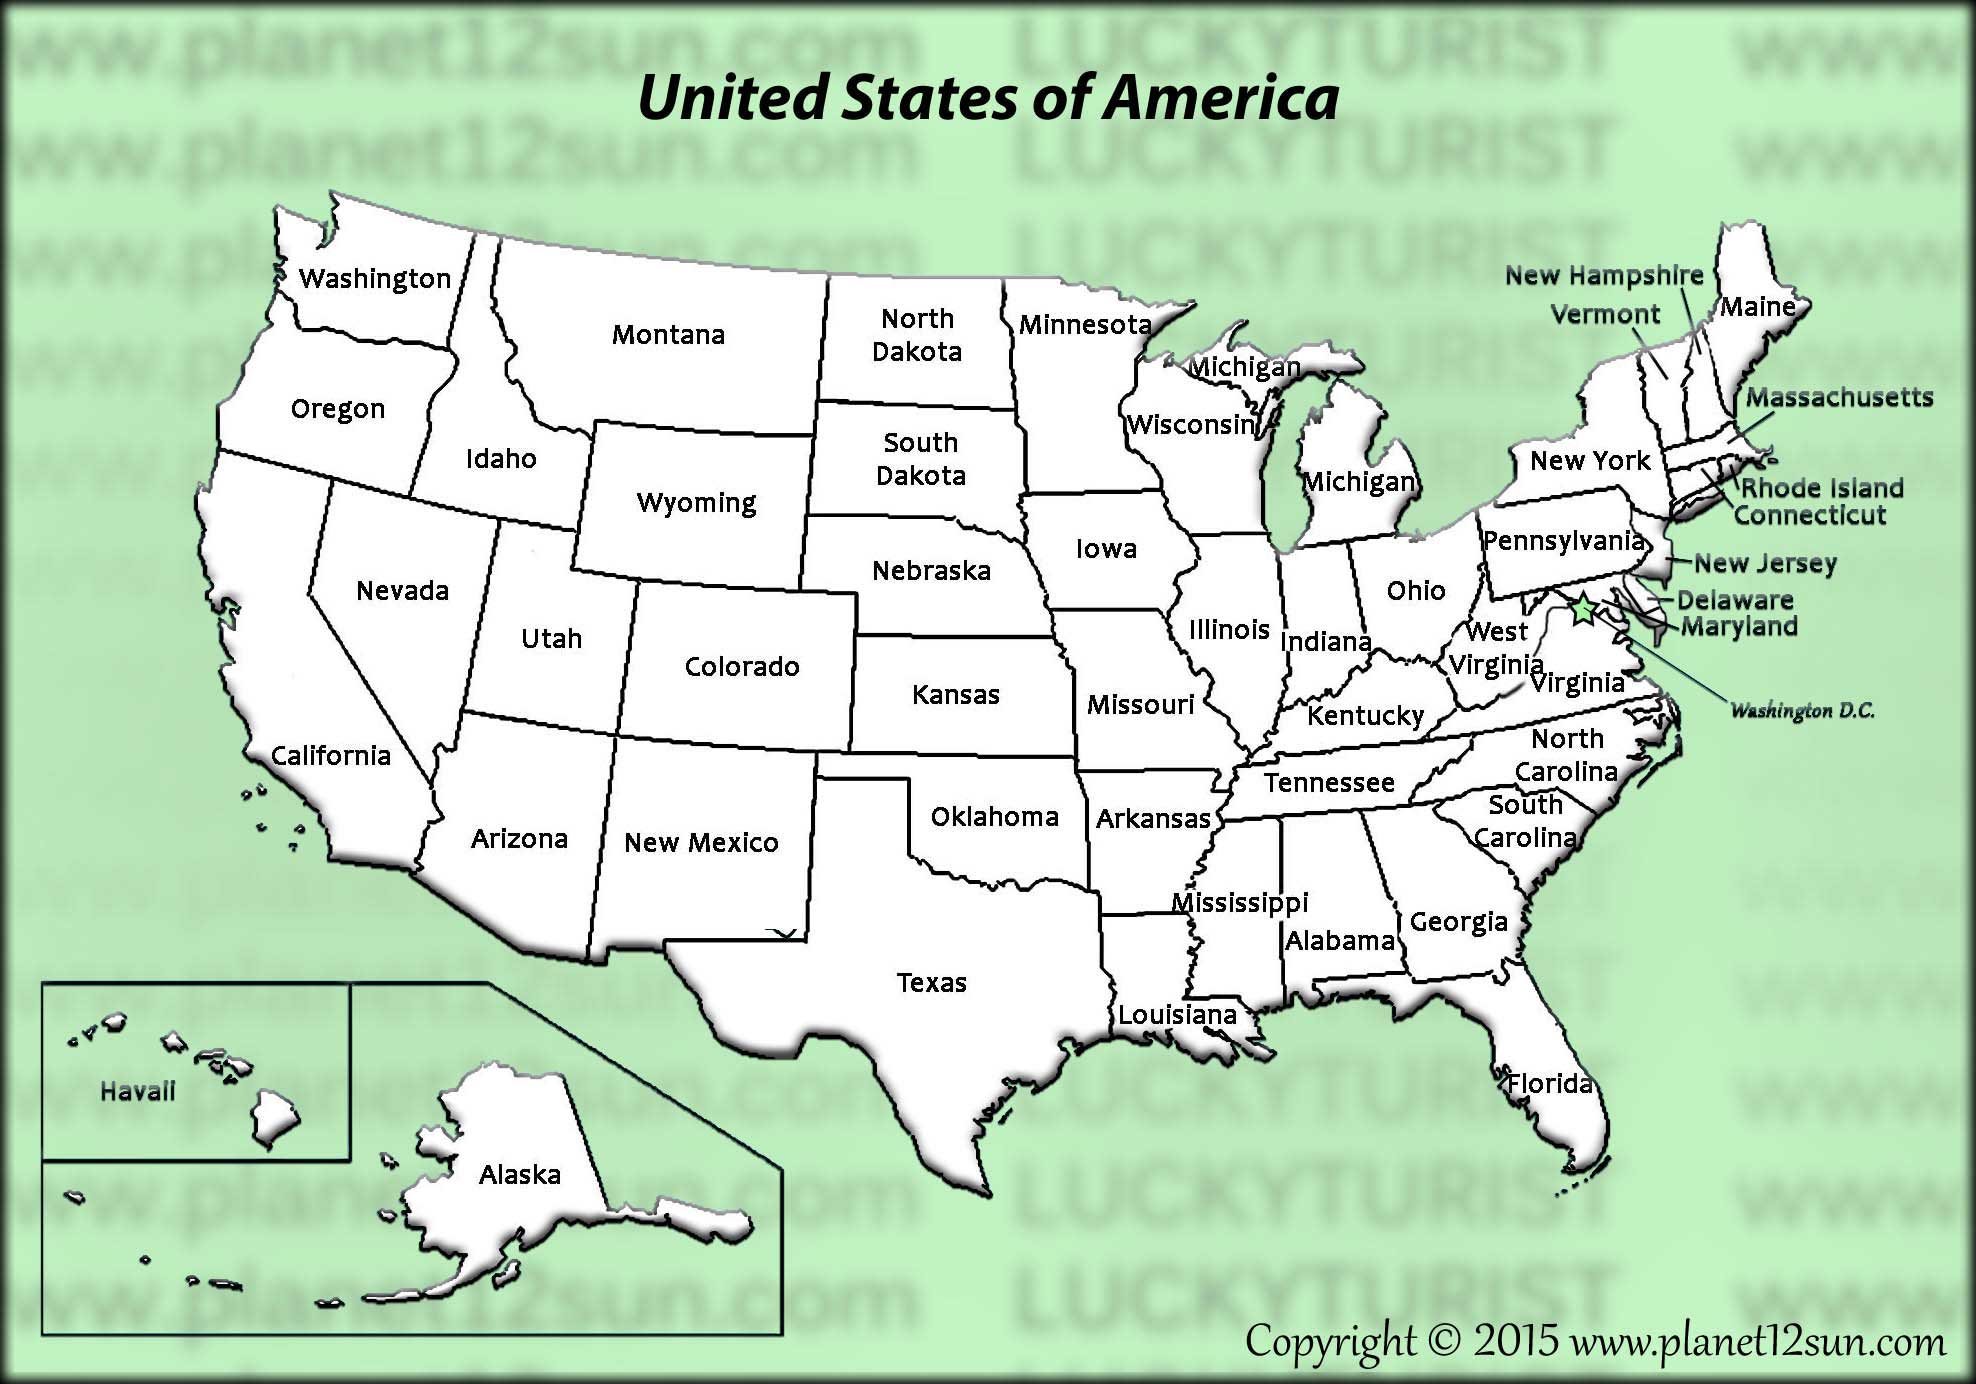 U.S. states